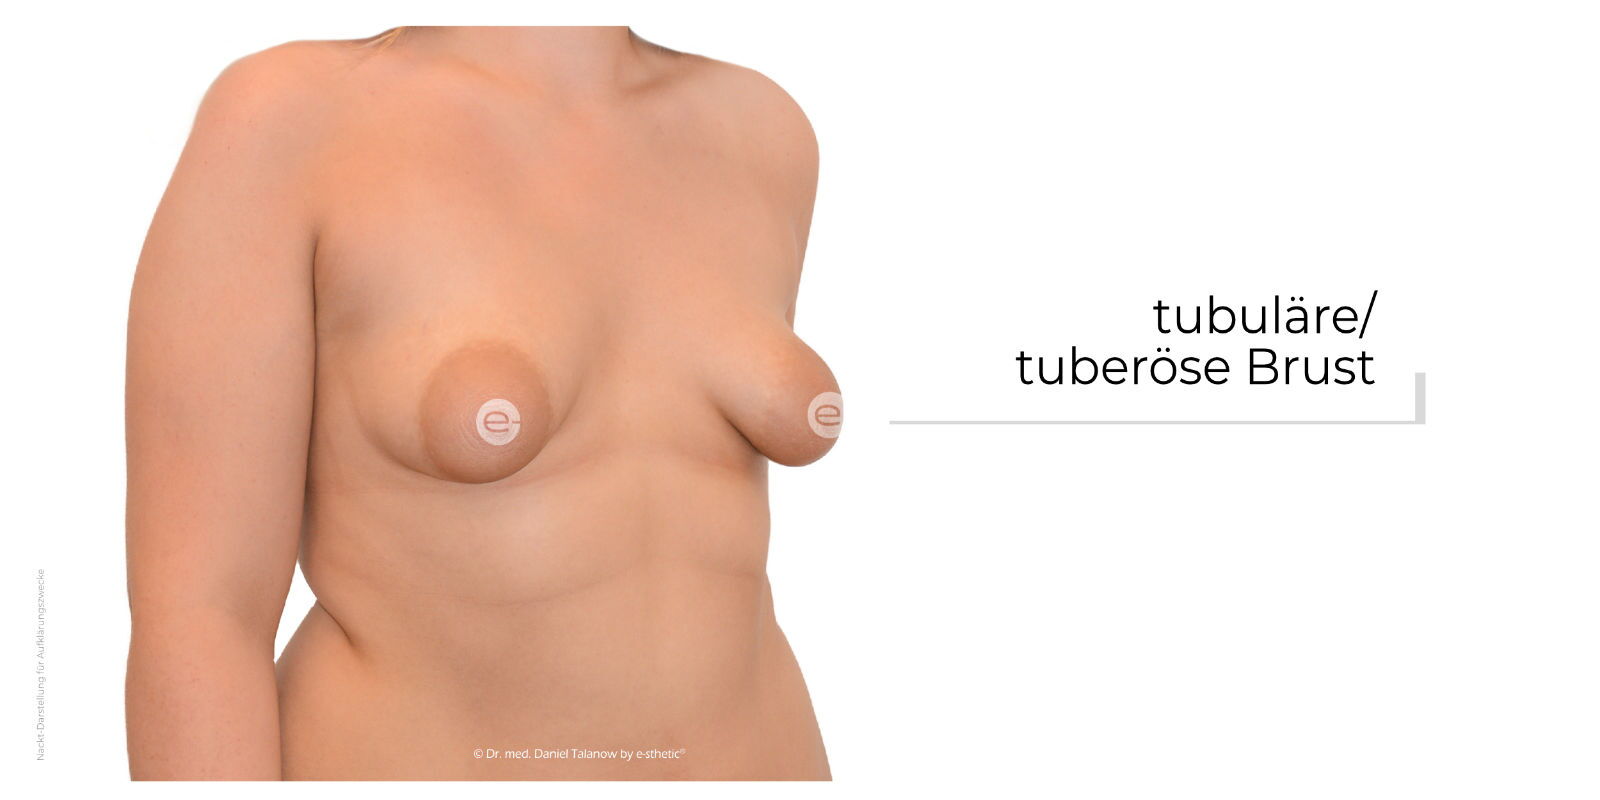 Die tubuläre Brust beschreibt eine Fehlbildung der weiblichen Brust